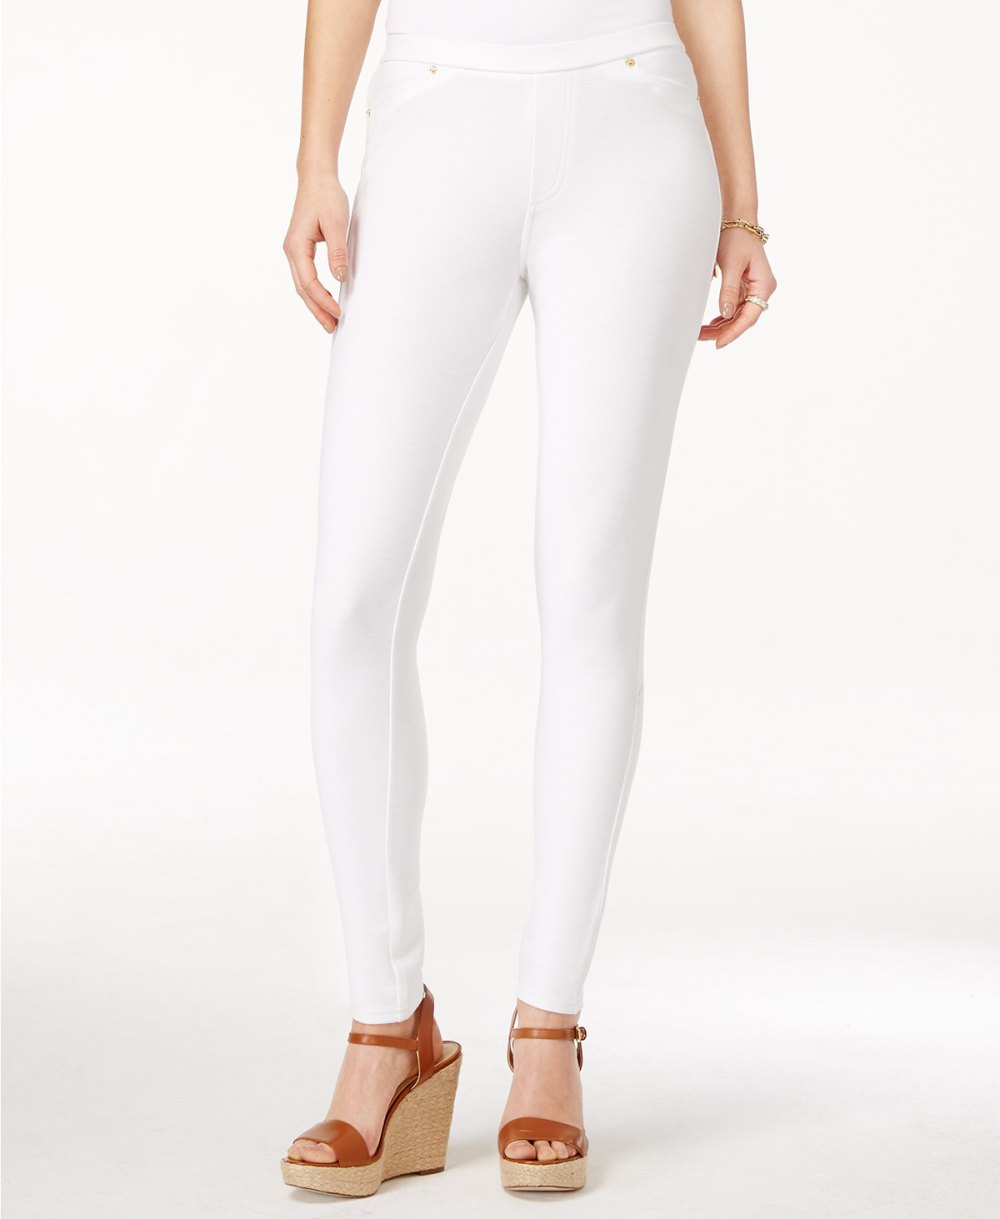 https://www.usmagazine.com/wp-content/uploads/2019/09/michael-kors-white-leggings.jpg?w=1000&quality=86&strip=all